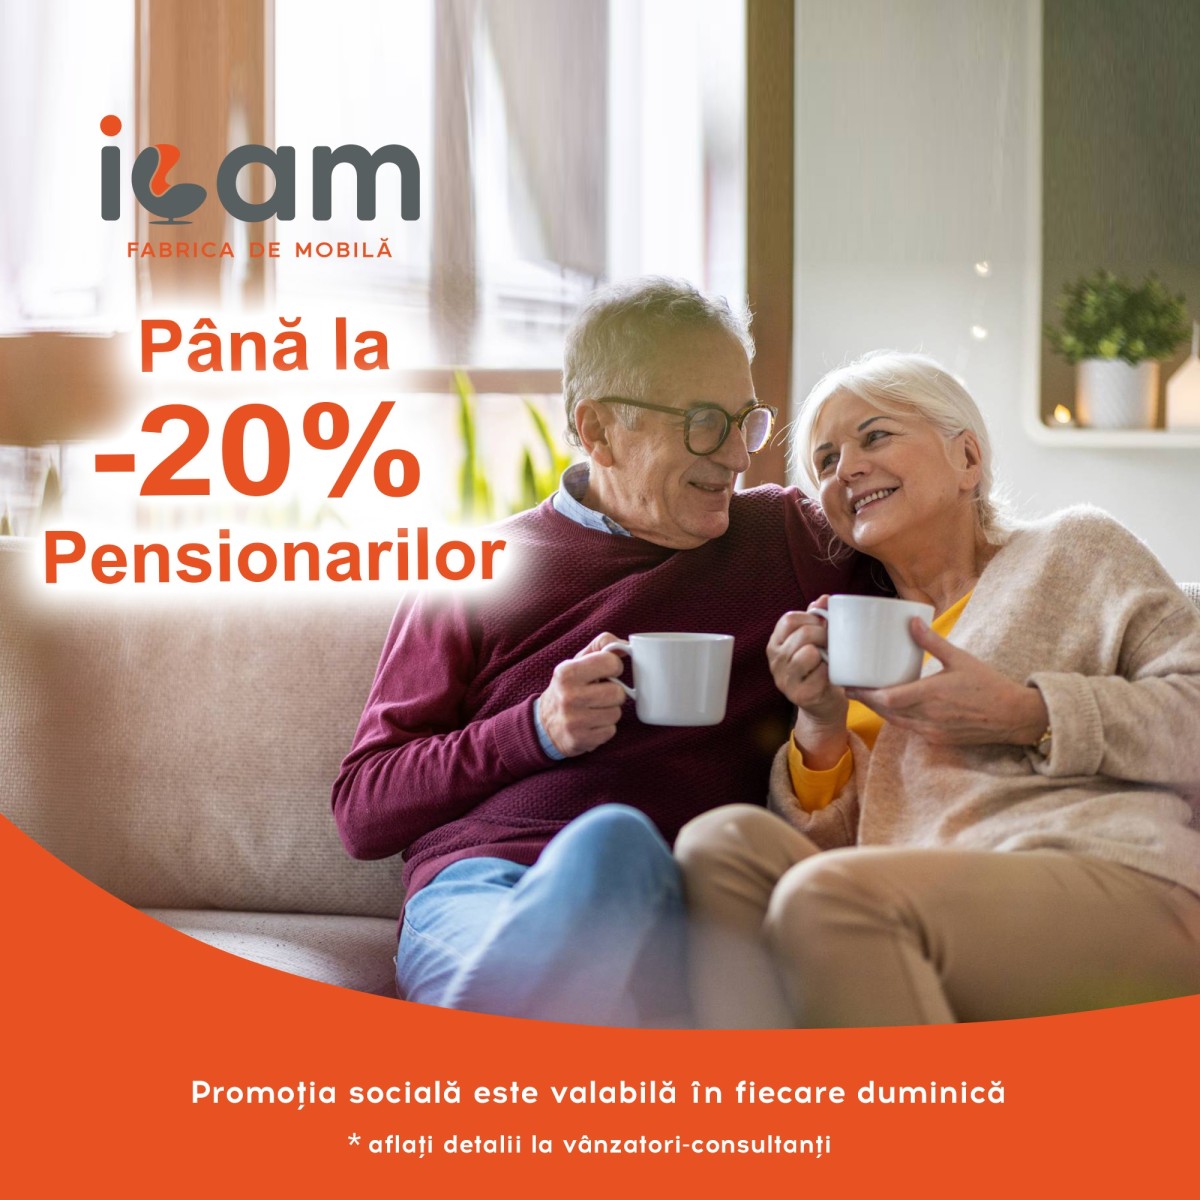 Специальное социальное предложение для пенсионеров в "ИКАМ"! Скидки до -20%